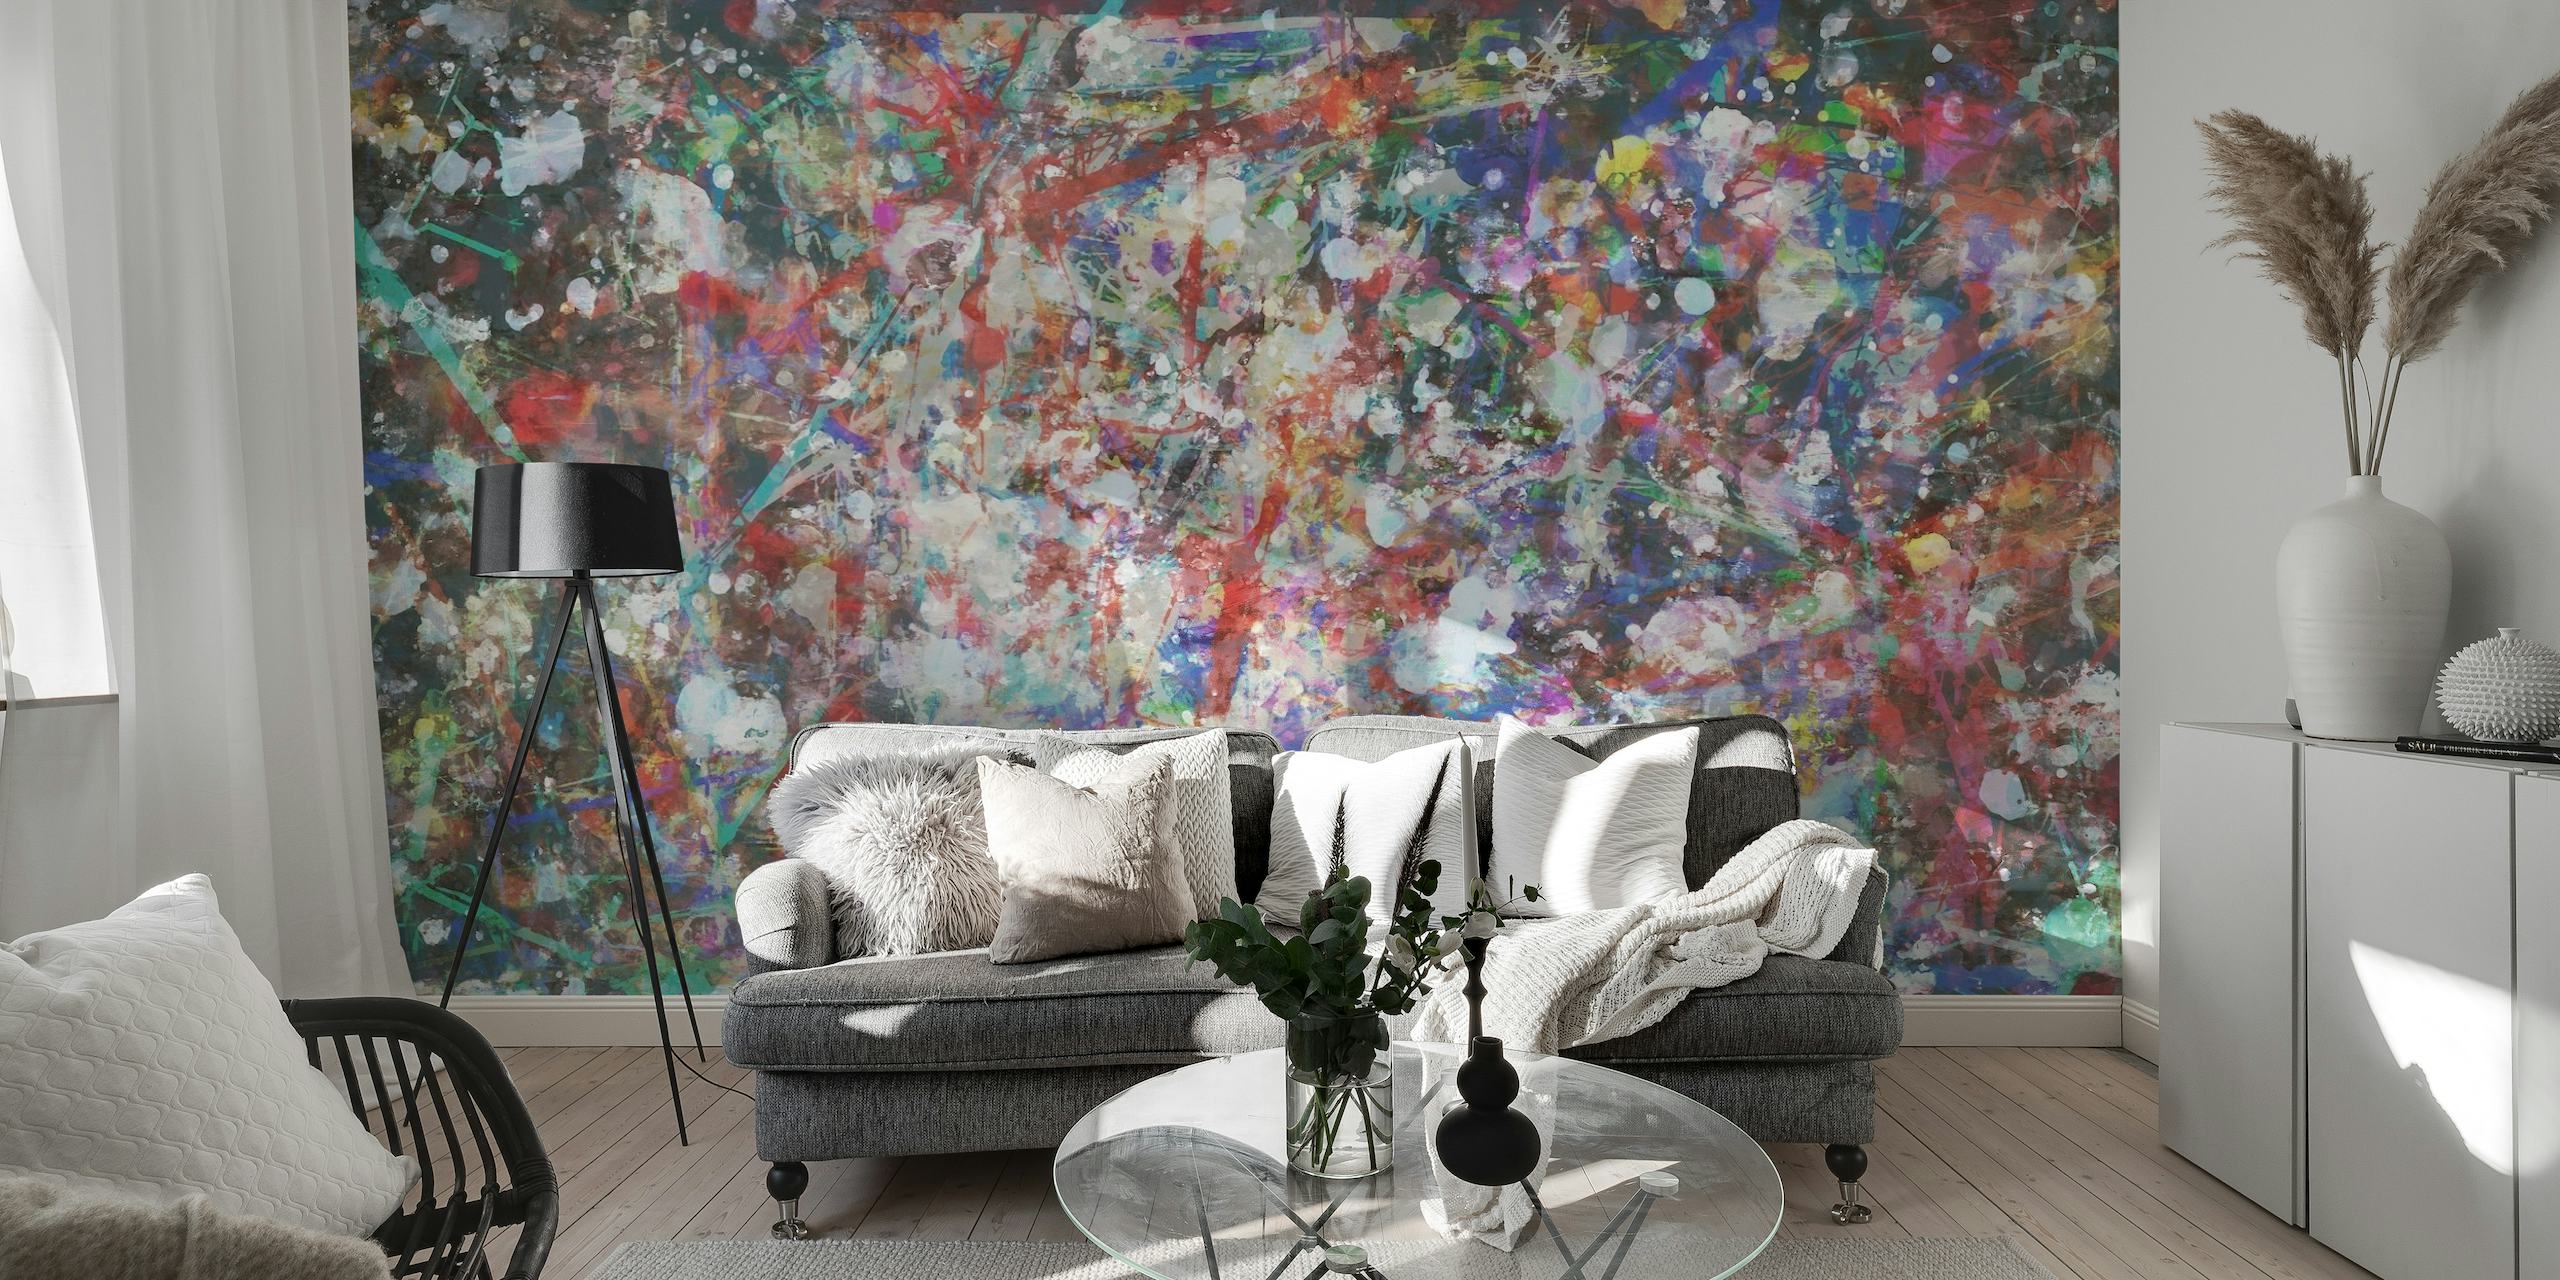 Mural abstracto con una colorida variedad de pinceladas y salpicaduras de pintura.